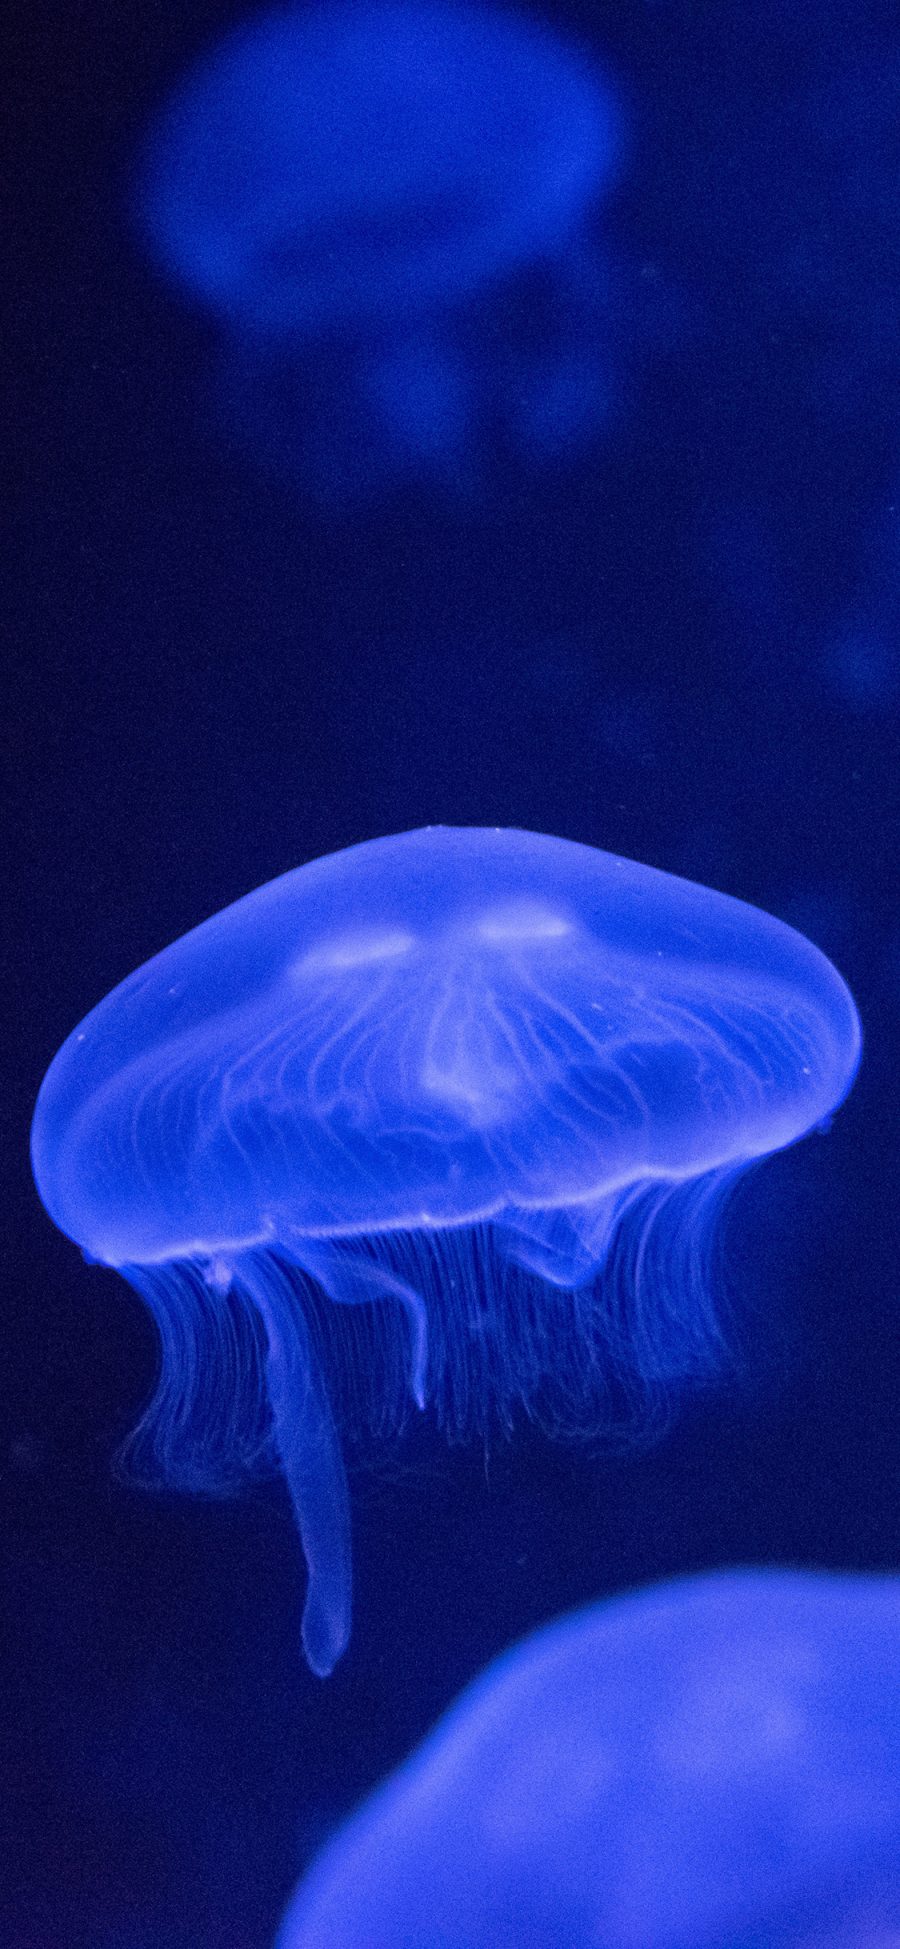 [2436×1125]水母 海洋生物 浮游  荧光 苹果手机壁纸图片